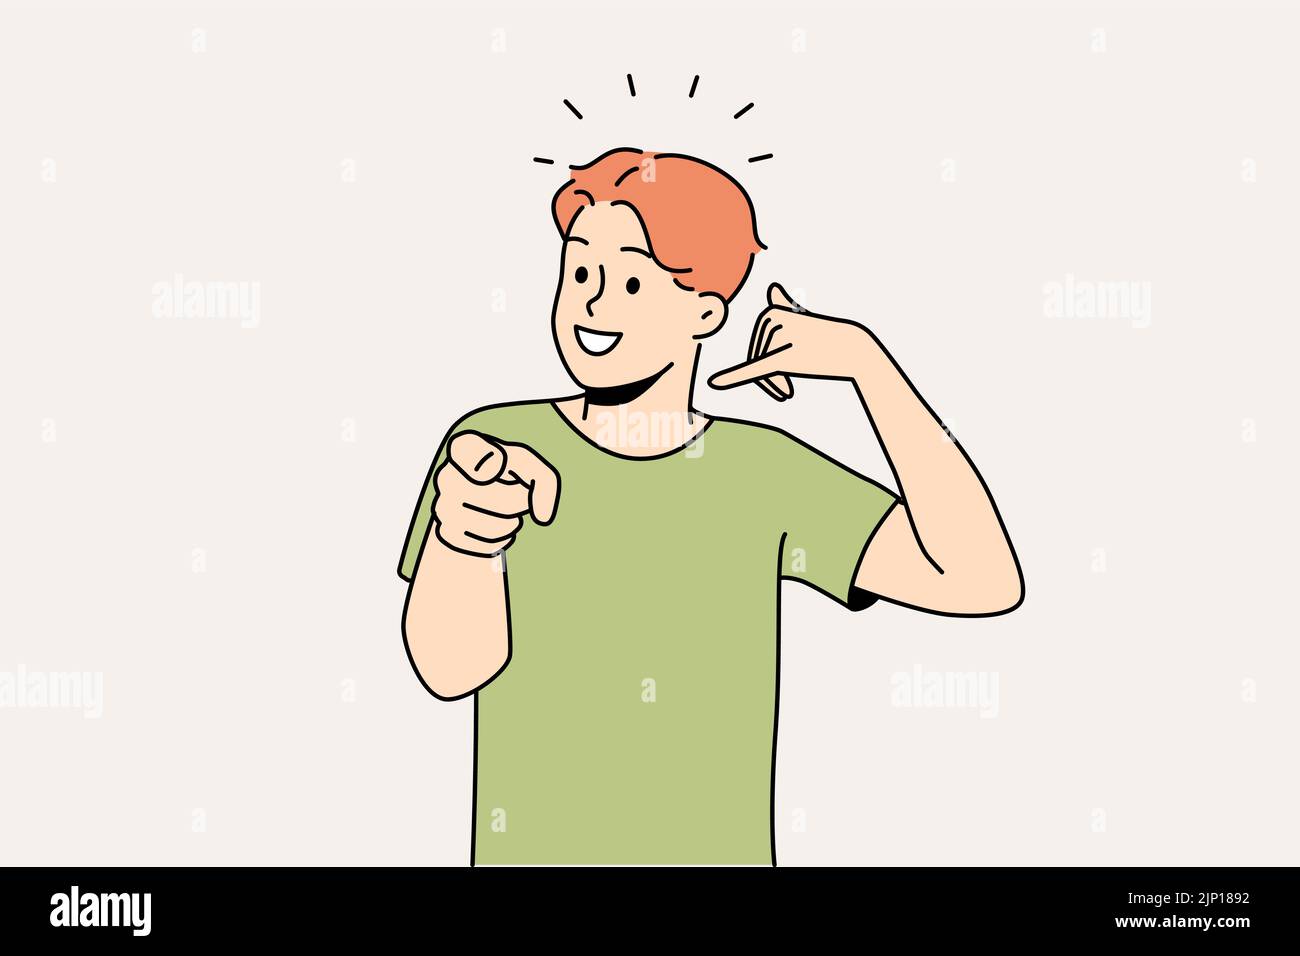 Lächelnder Typ macht eine Handbewegung und bittet um einen Rückruf. Glücklicher Mann demonstriert Rückrufzeichen. Nonverbale Kommunikation. Vektorgrafik. Stock Vektor